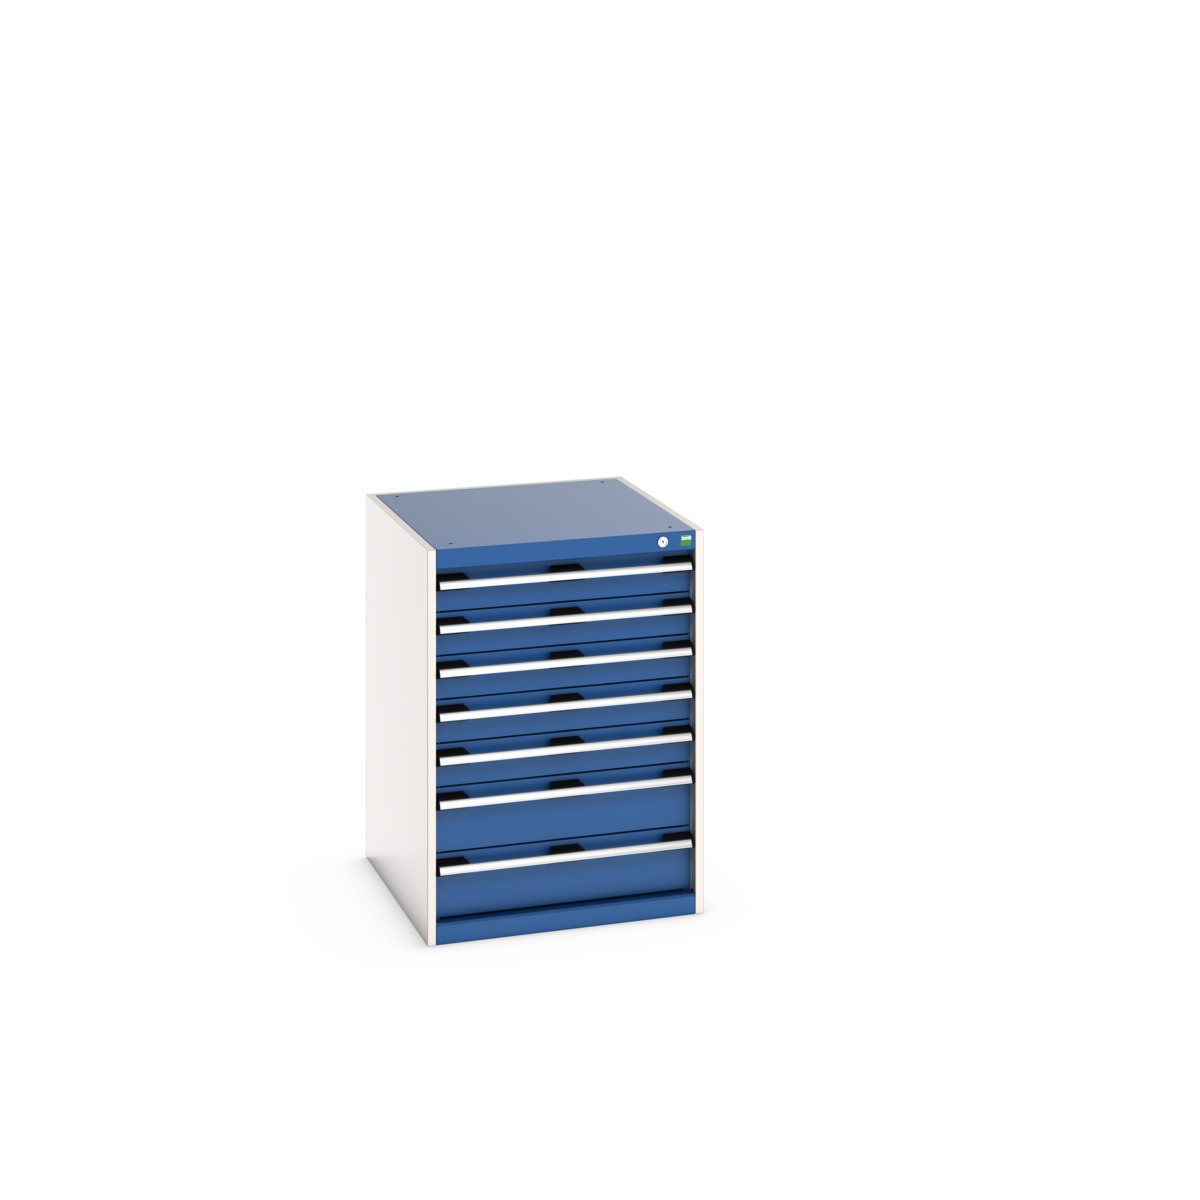 40027090.11V - cubio drawer cabinet